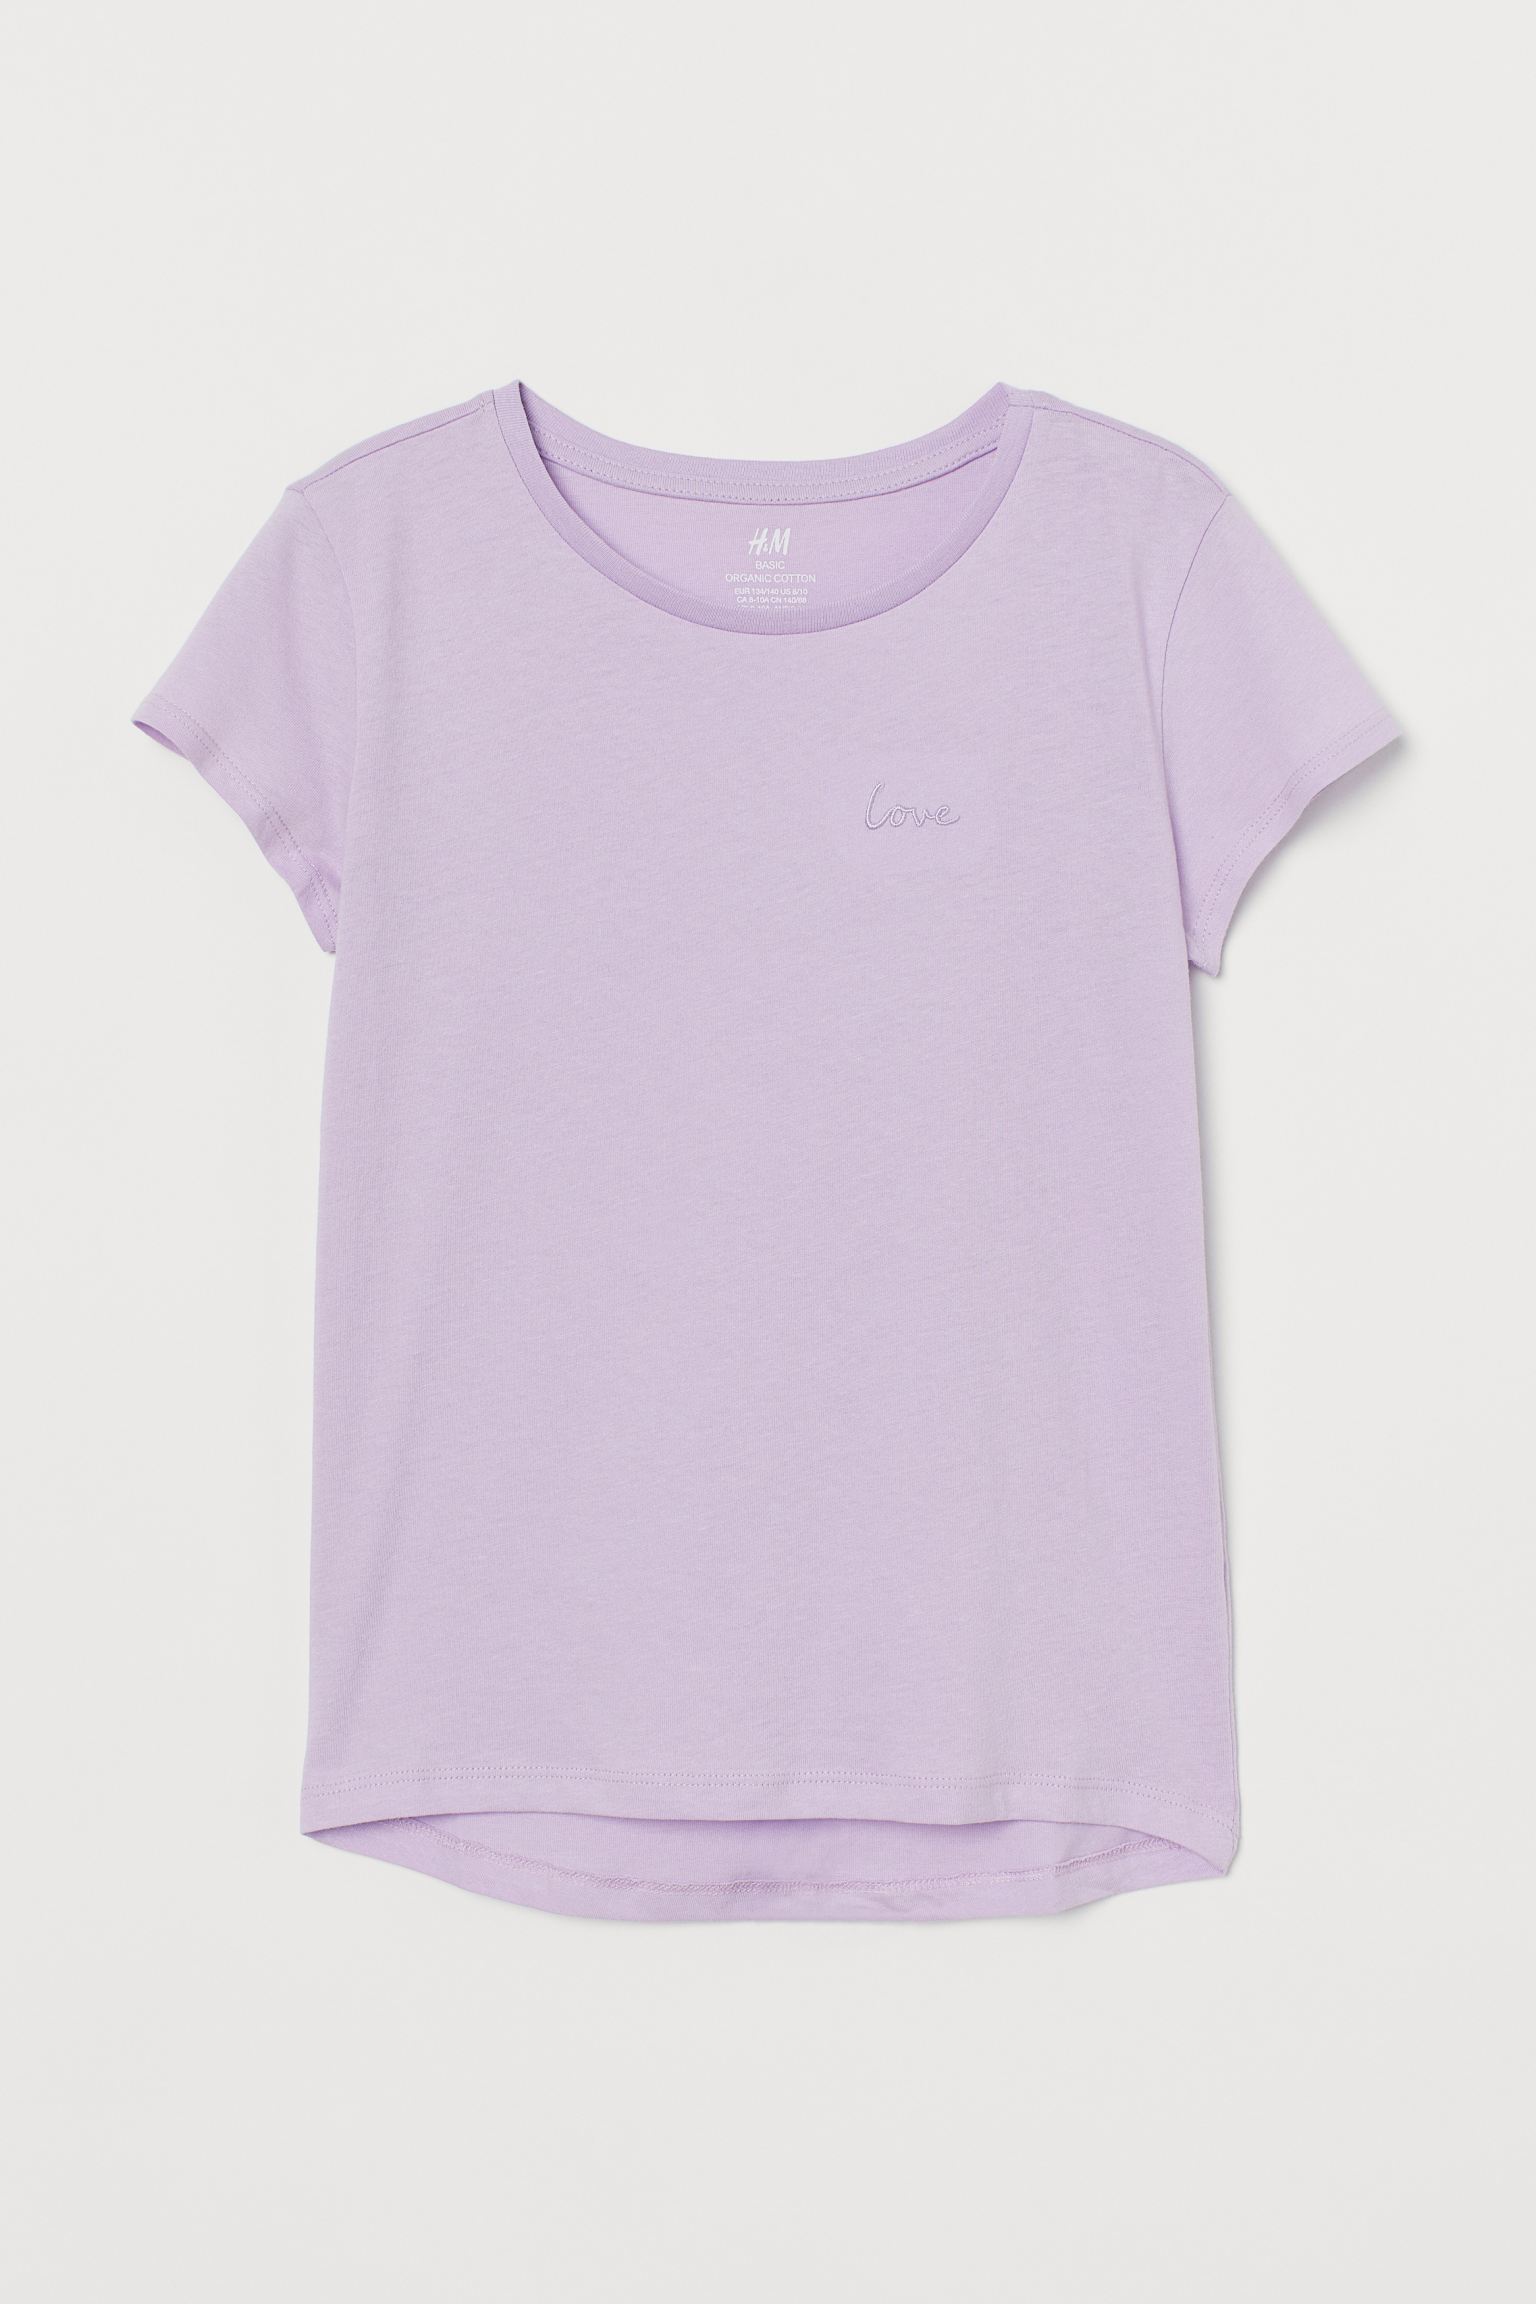 تی شرت دخترانه 35249 سایز 9 تا 14 سال کد 1 مارک H&M